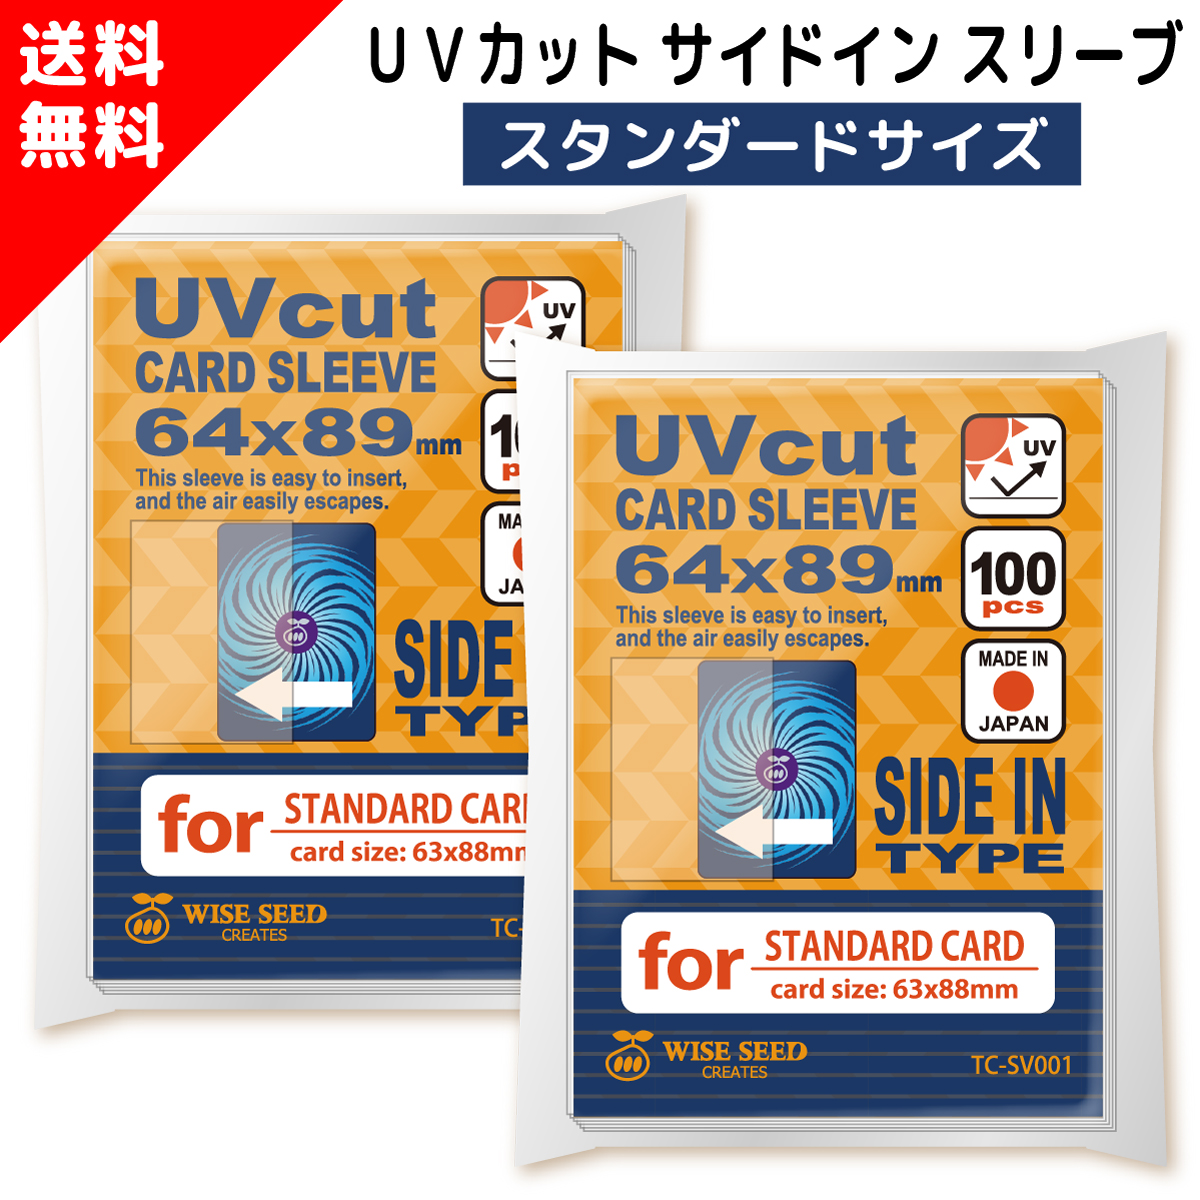 UVカット カードスリーブ サイドイン スタンダードサイズ 64×89mm (100 